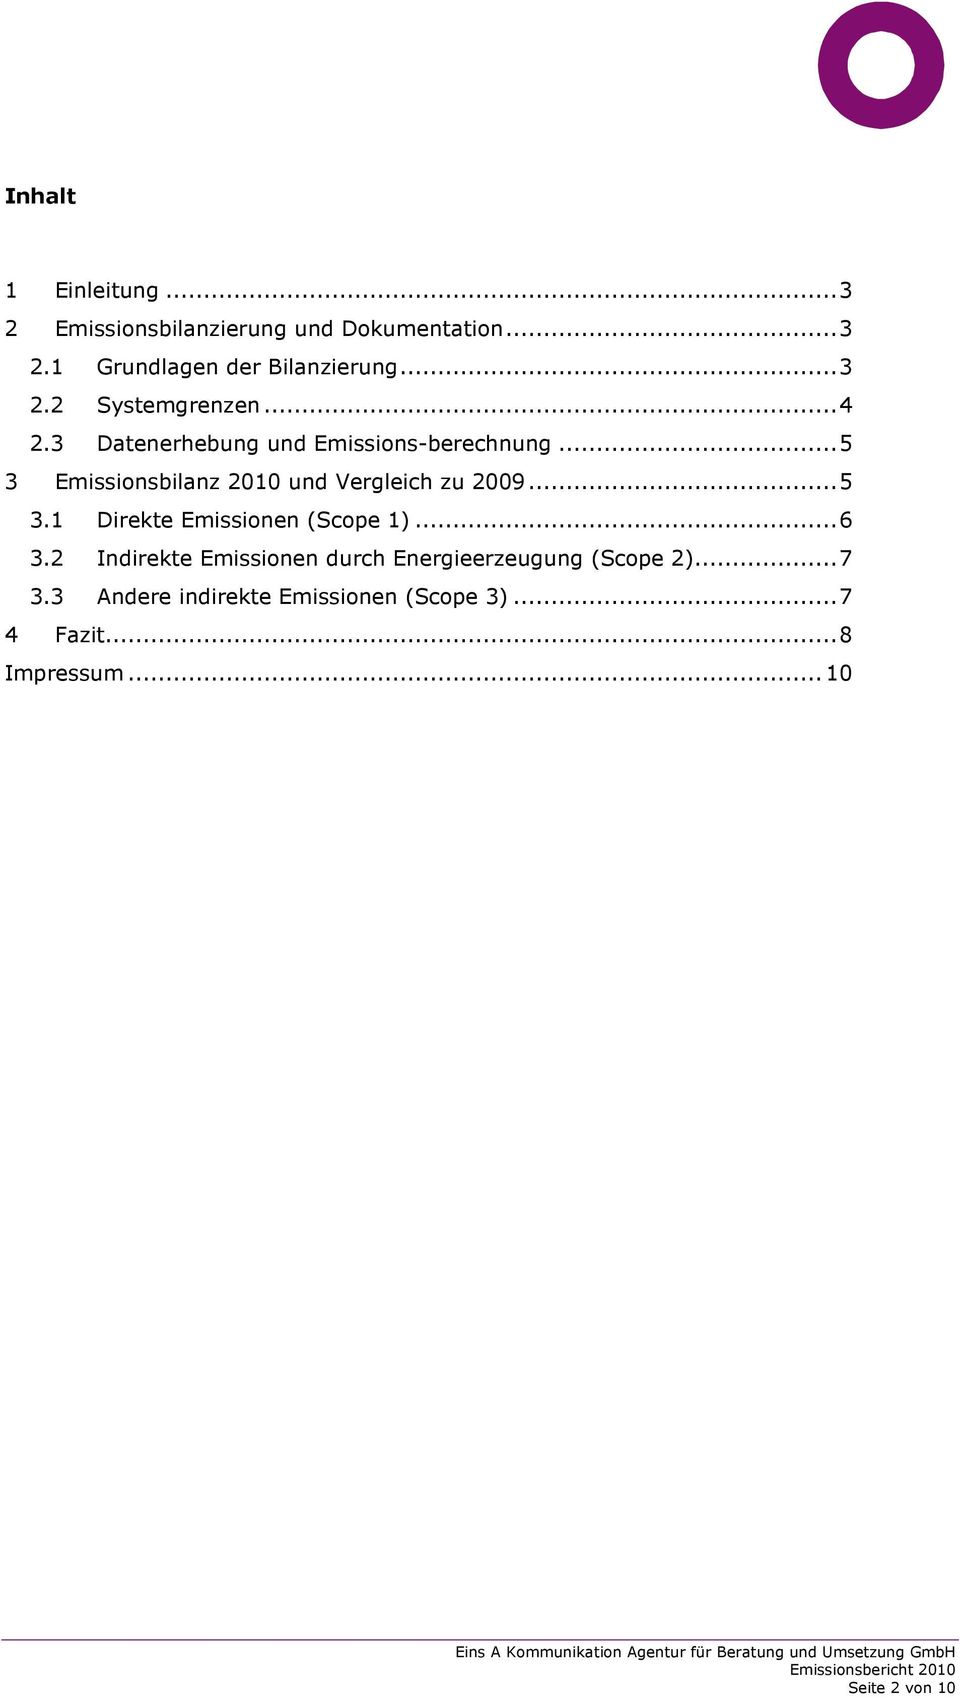 .. 5 3 Emissionsbilanz 2010 und Vergleich zu 2009... 5 3.1 Direkte Emissionen (Scope 1)... 6 3.